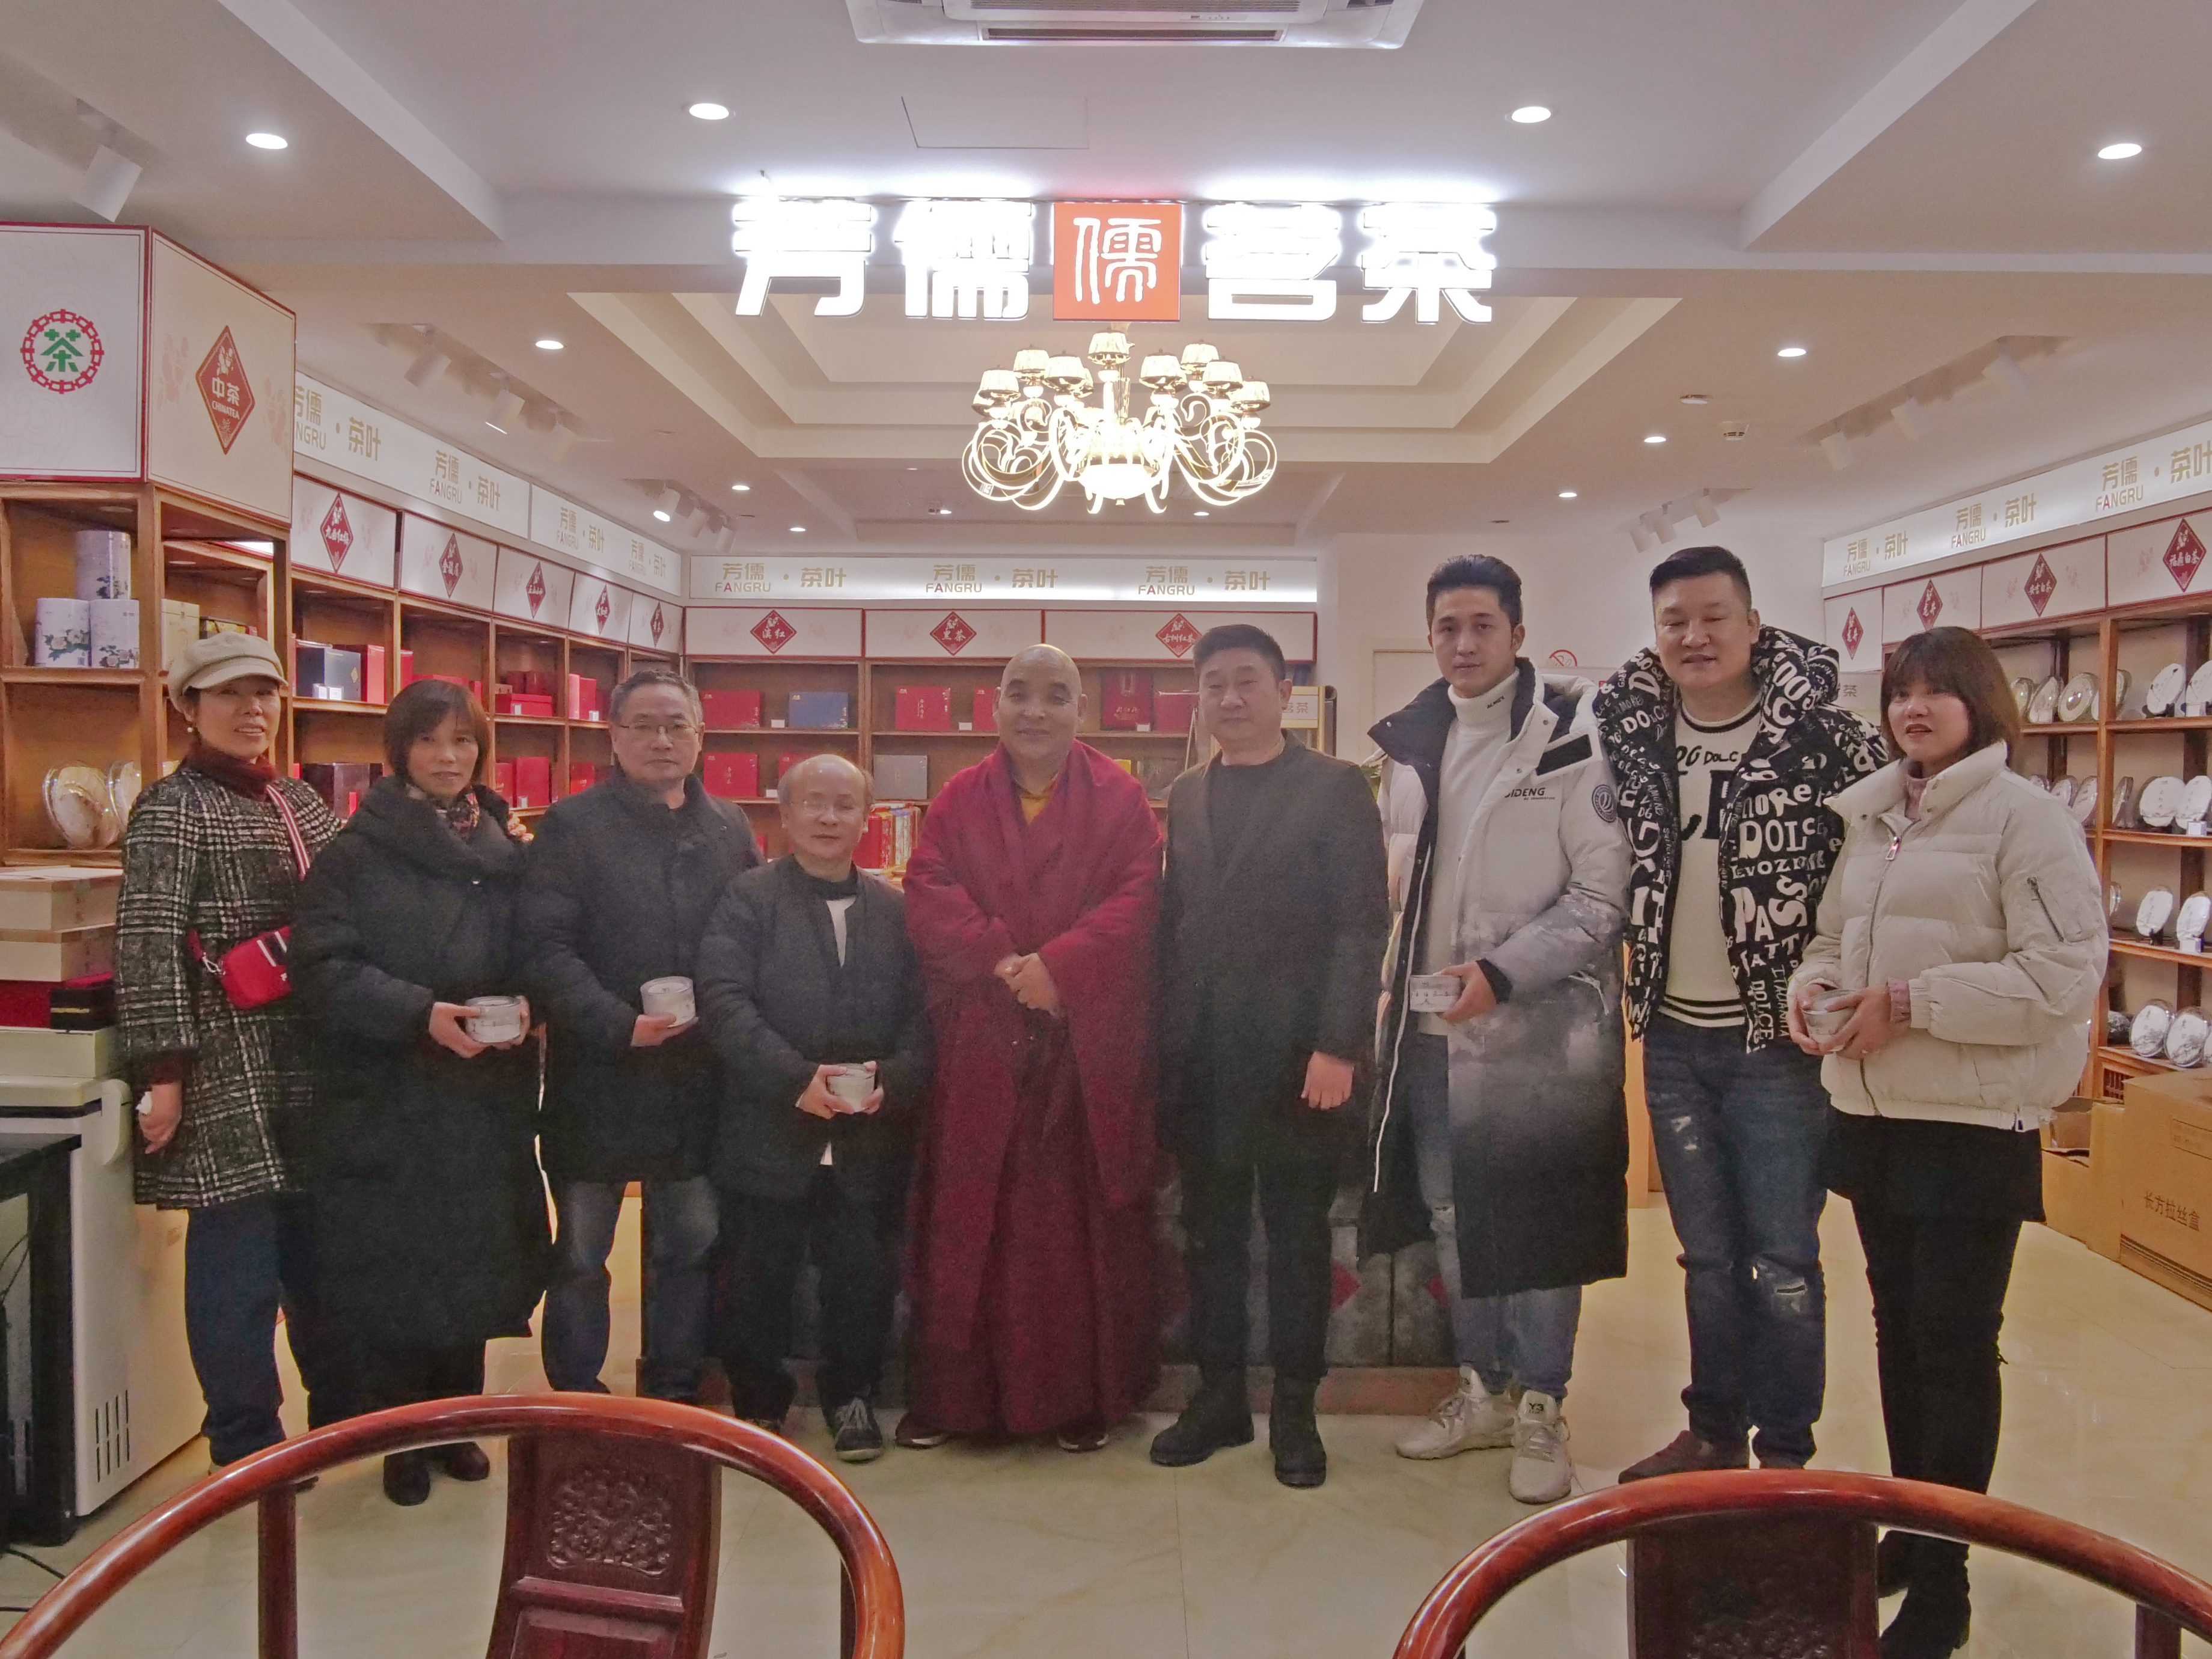 芳儒茗茶邀请西藏自治区佛教协会副会长萨迦班典顿玉一行参观实体店